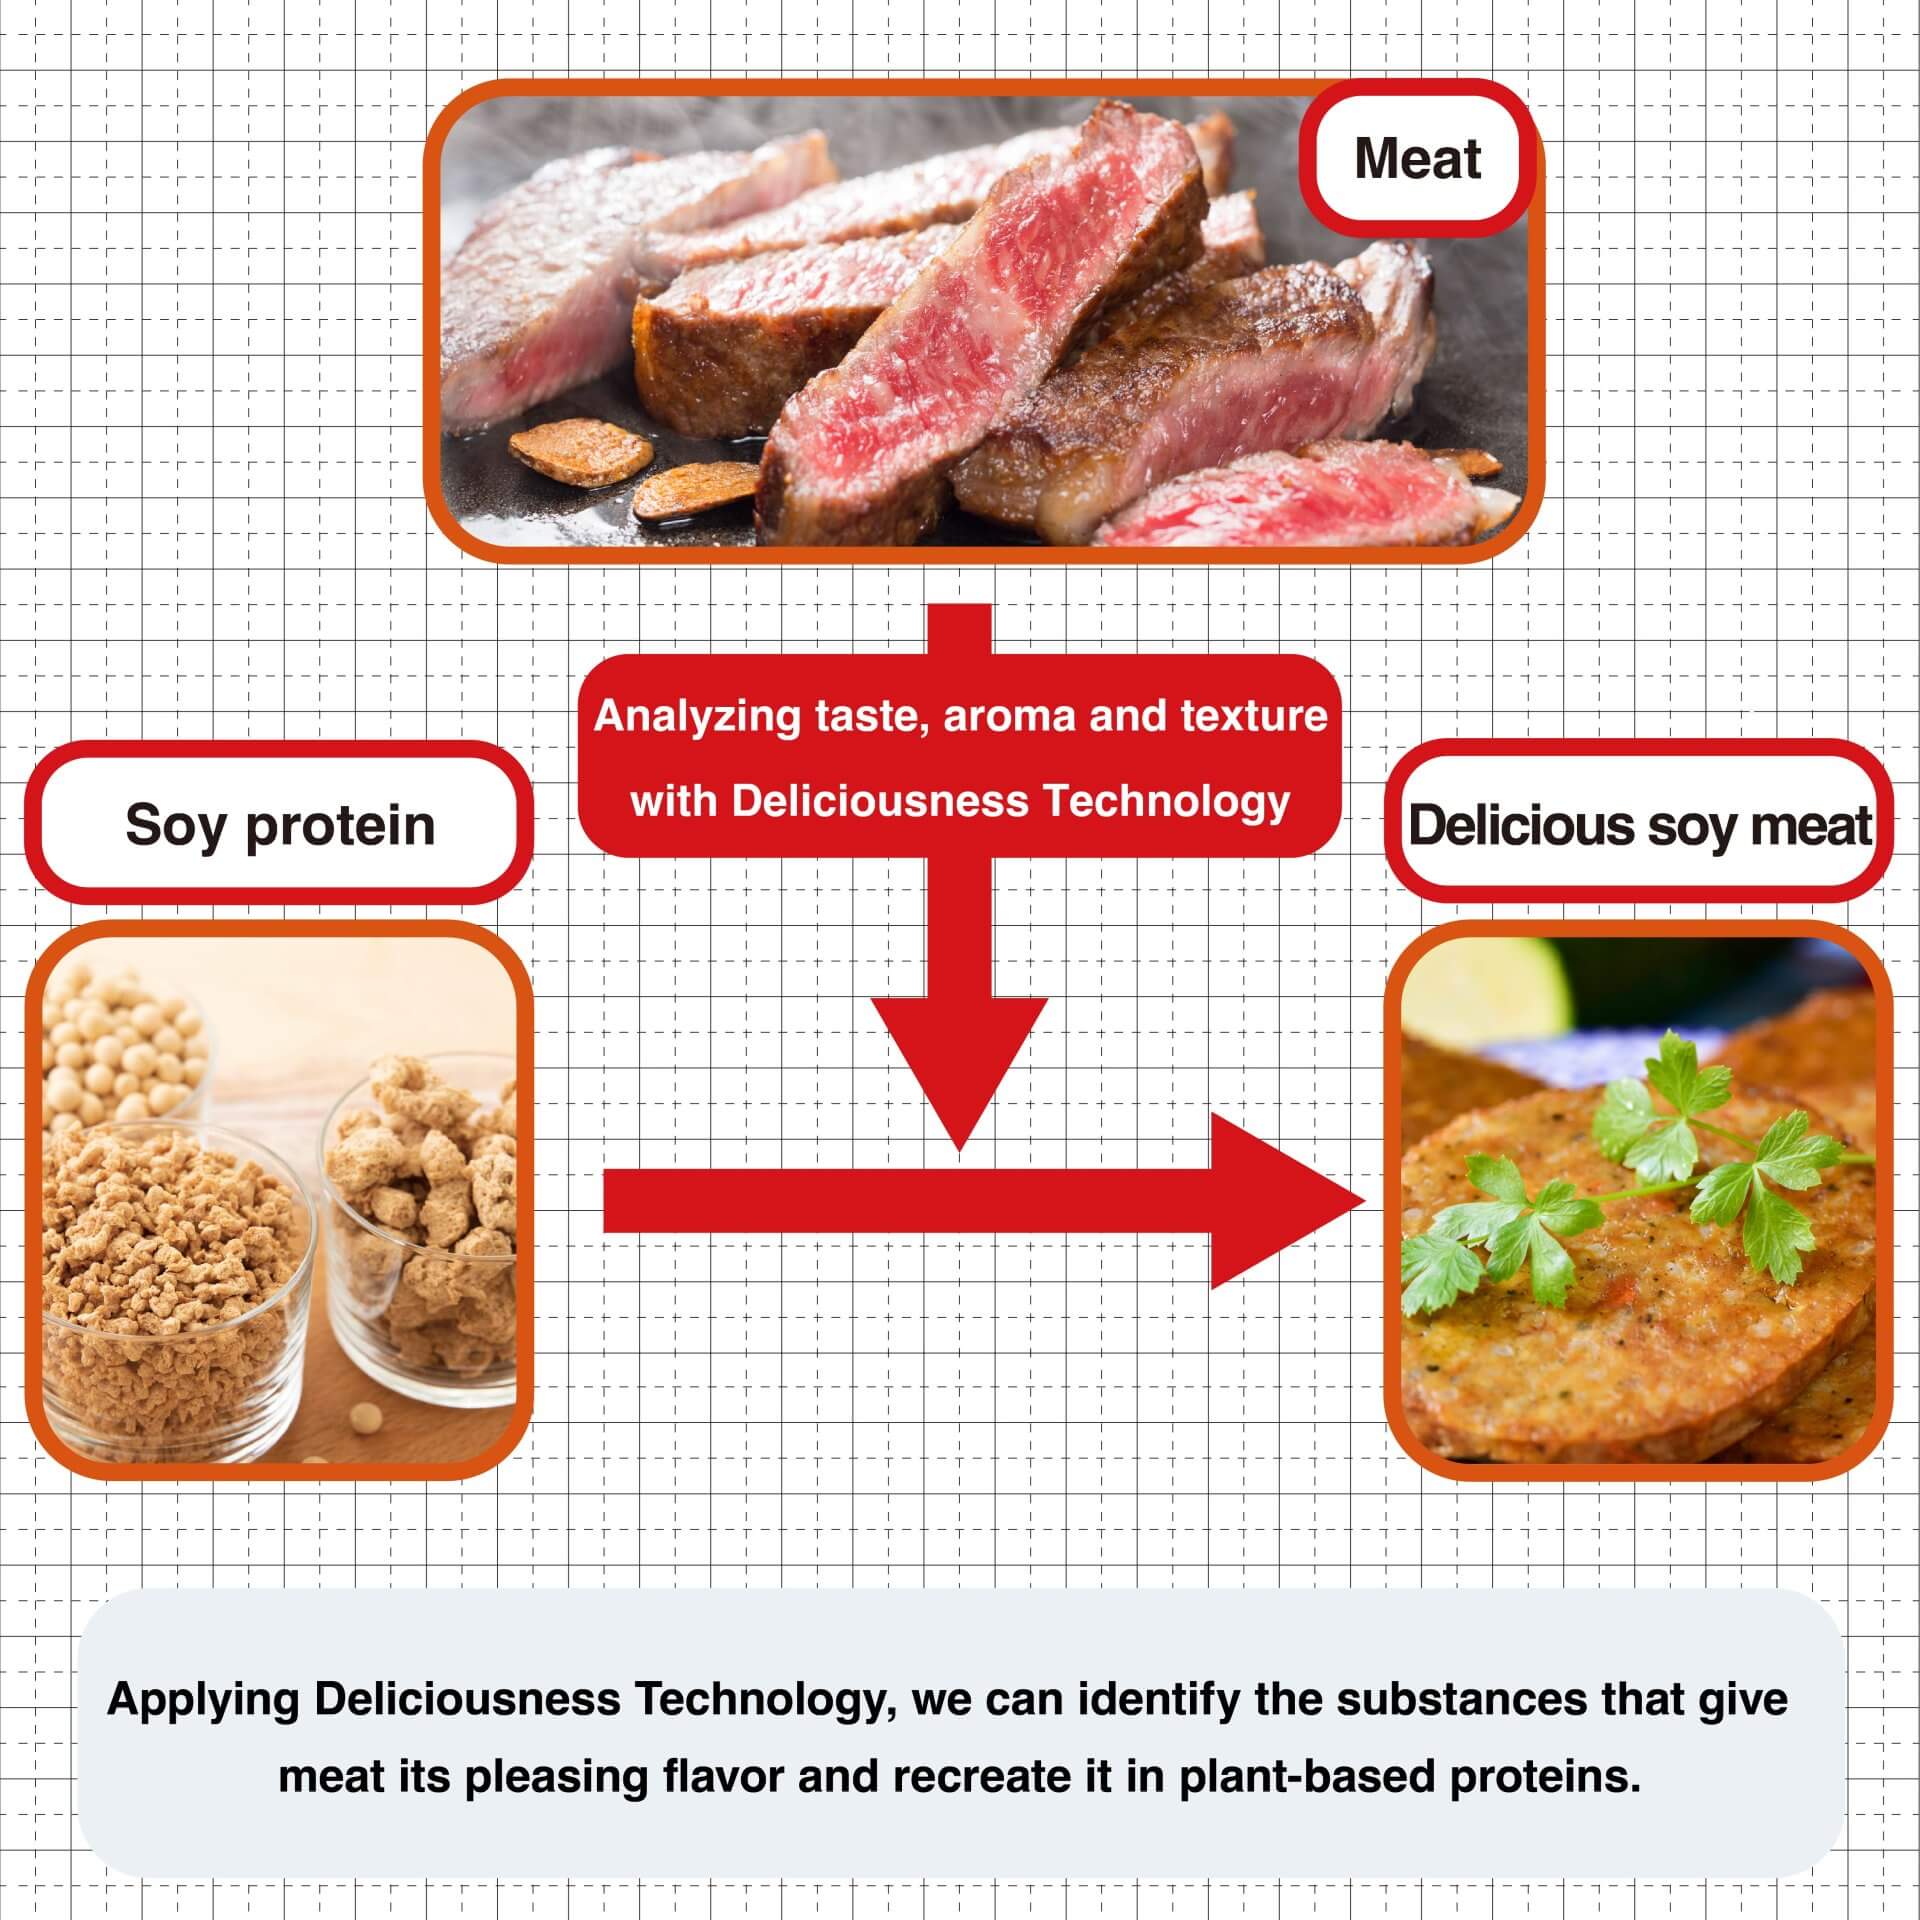 وبتطبيق تقنية اللذة، يمكننا تحديد المواد التي تعطي اللحوم نكهتها اللذيذة وإعادة تكوينها في البروتينات النباتية.